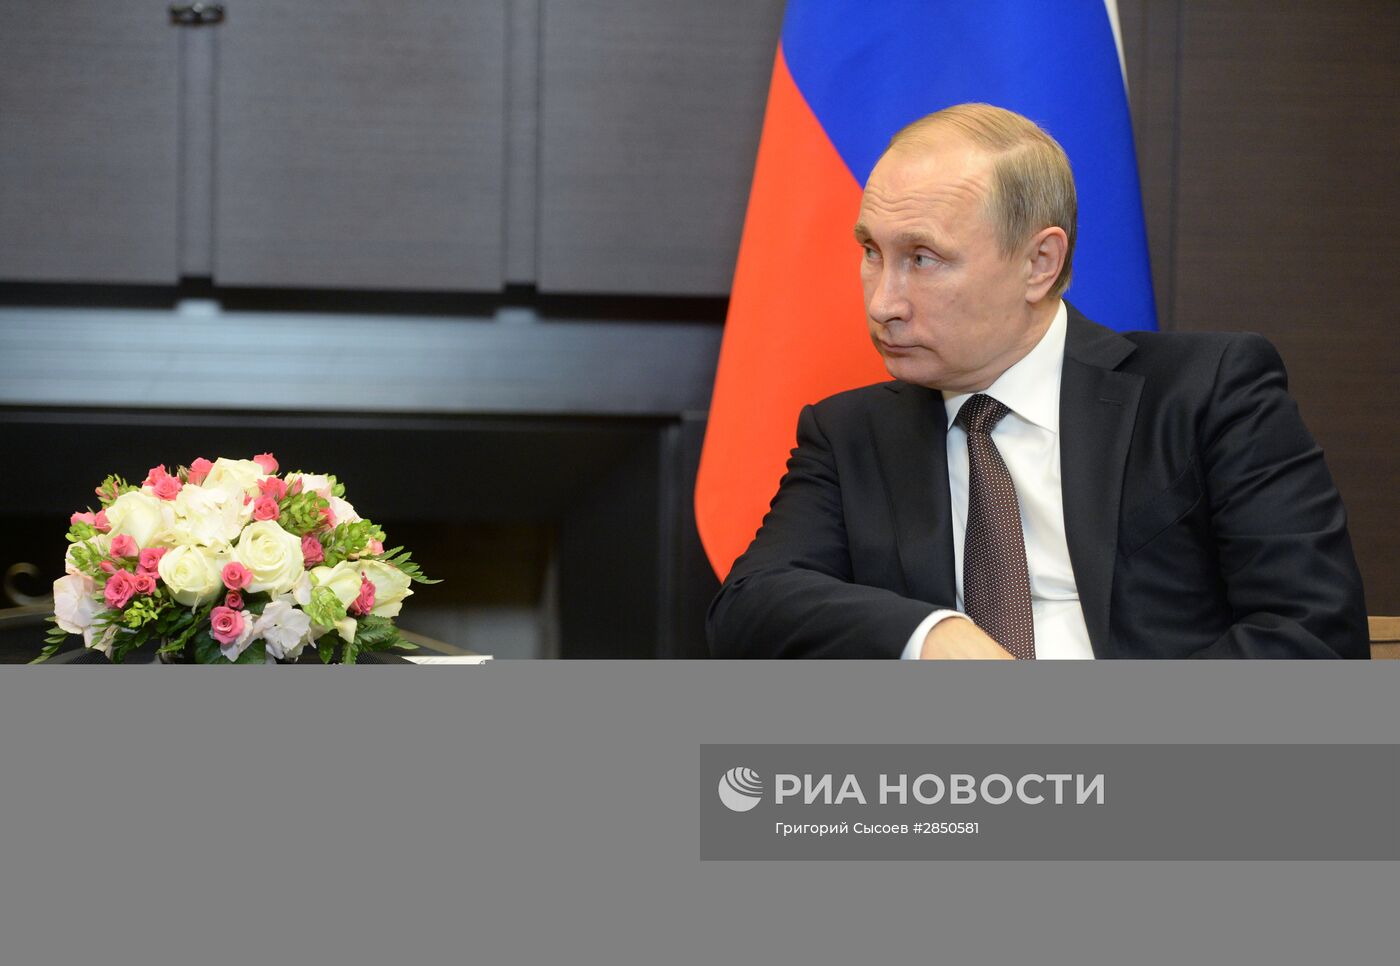 Двусторонняя встреча президента РФ В. Путина с президентом Индонезии Джоко Видодо